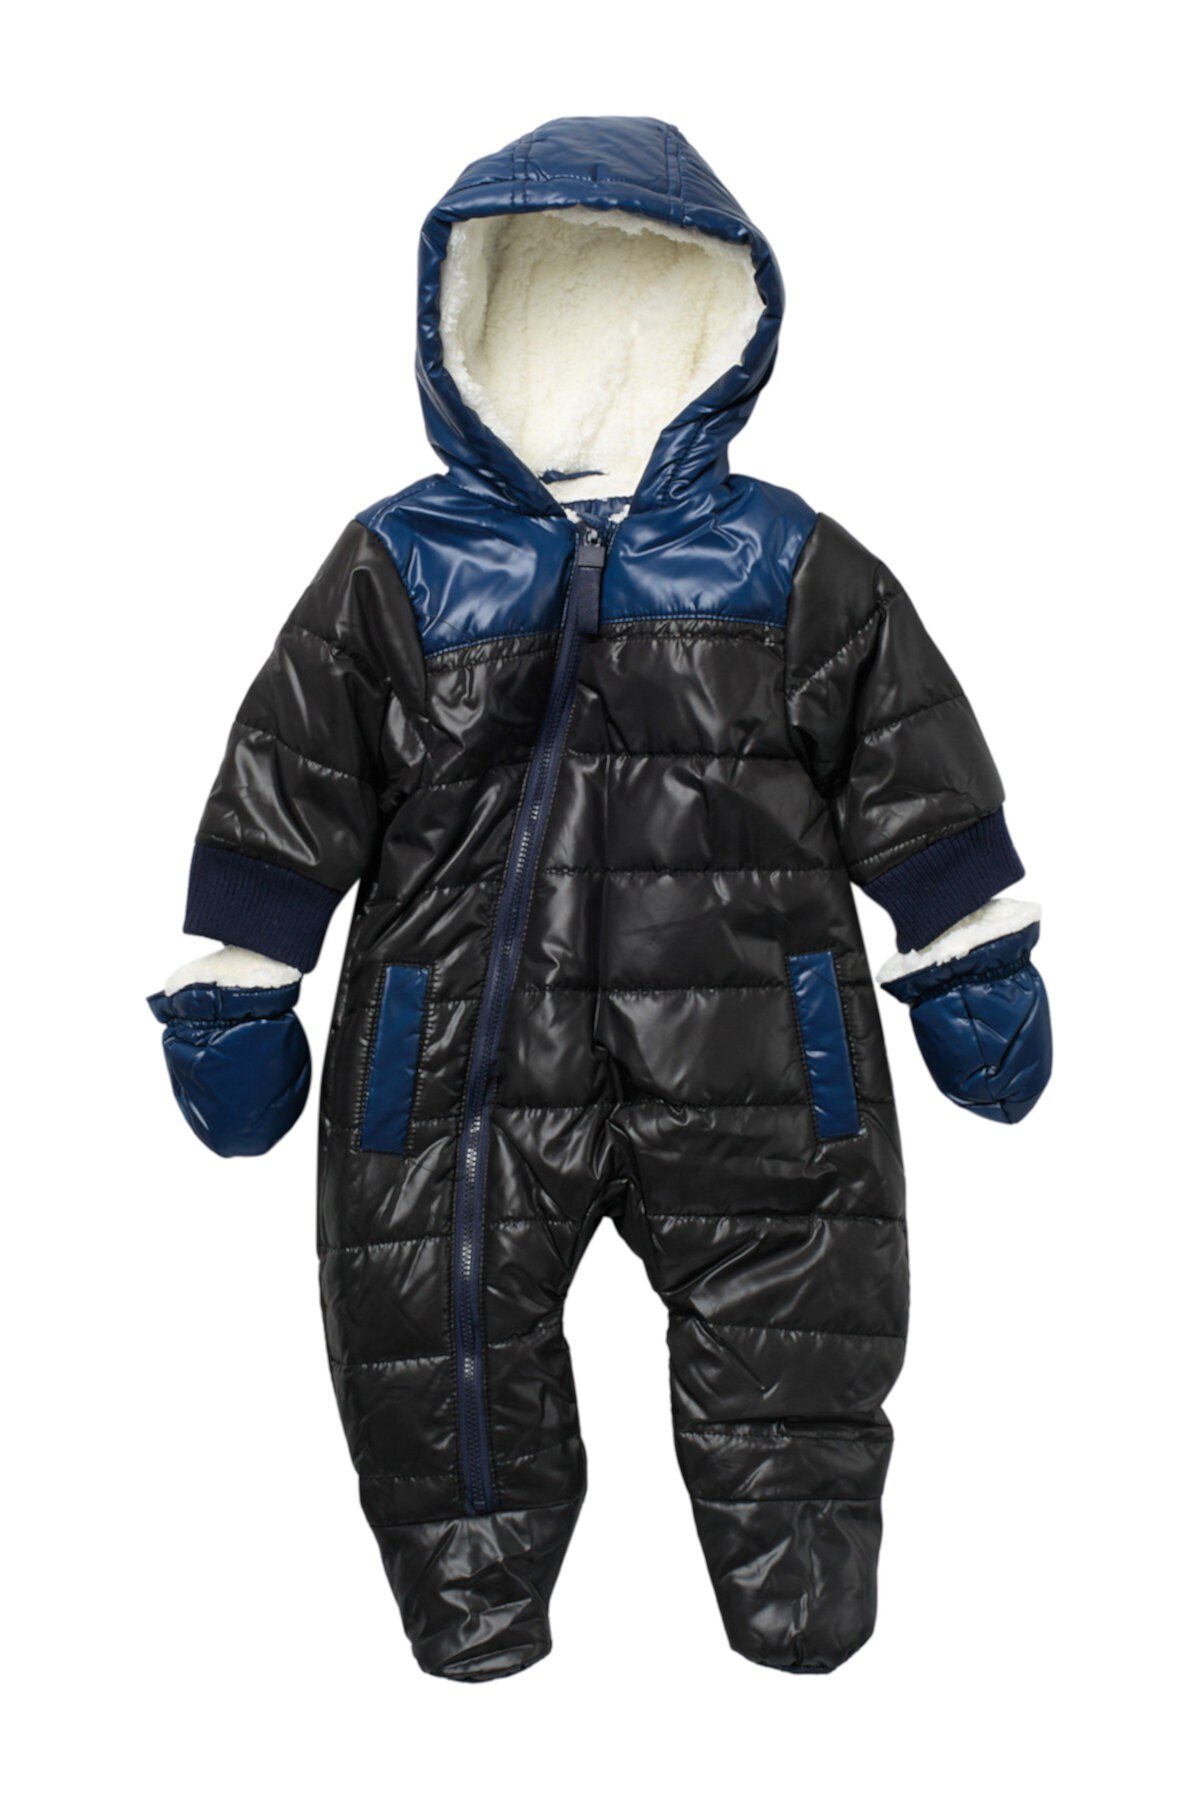 Комплект зимнего комбинезона и перчаток с флисовой подкладкой для детской коляски (для малышей от 3 до 9 месяцев) Urban Republic